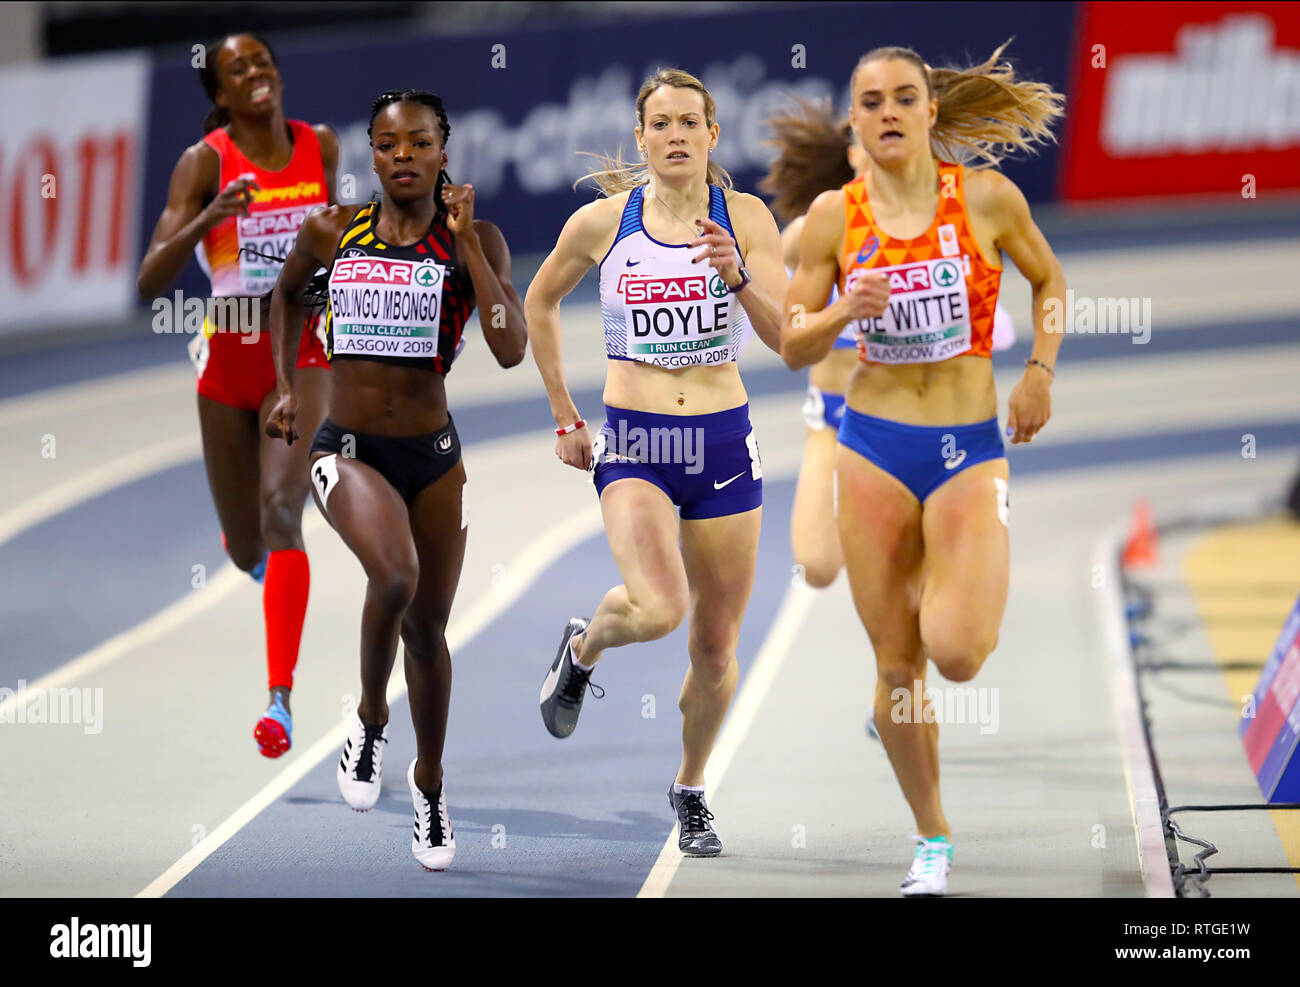 Gran Bretagna Eilidh Doyle (centro) compete in donne 400m 7 di calore durante il giorno uno degli Europei Indoor di Atletica a Emirates Arena, Glasgow. Foto Stock